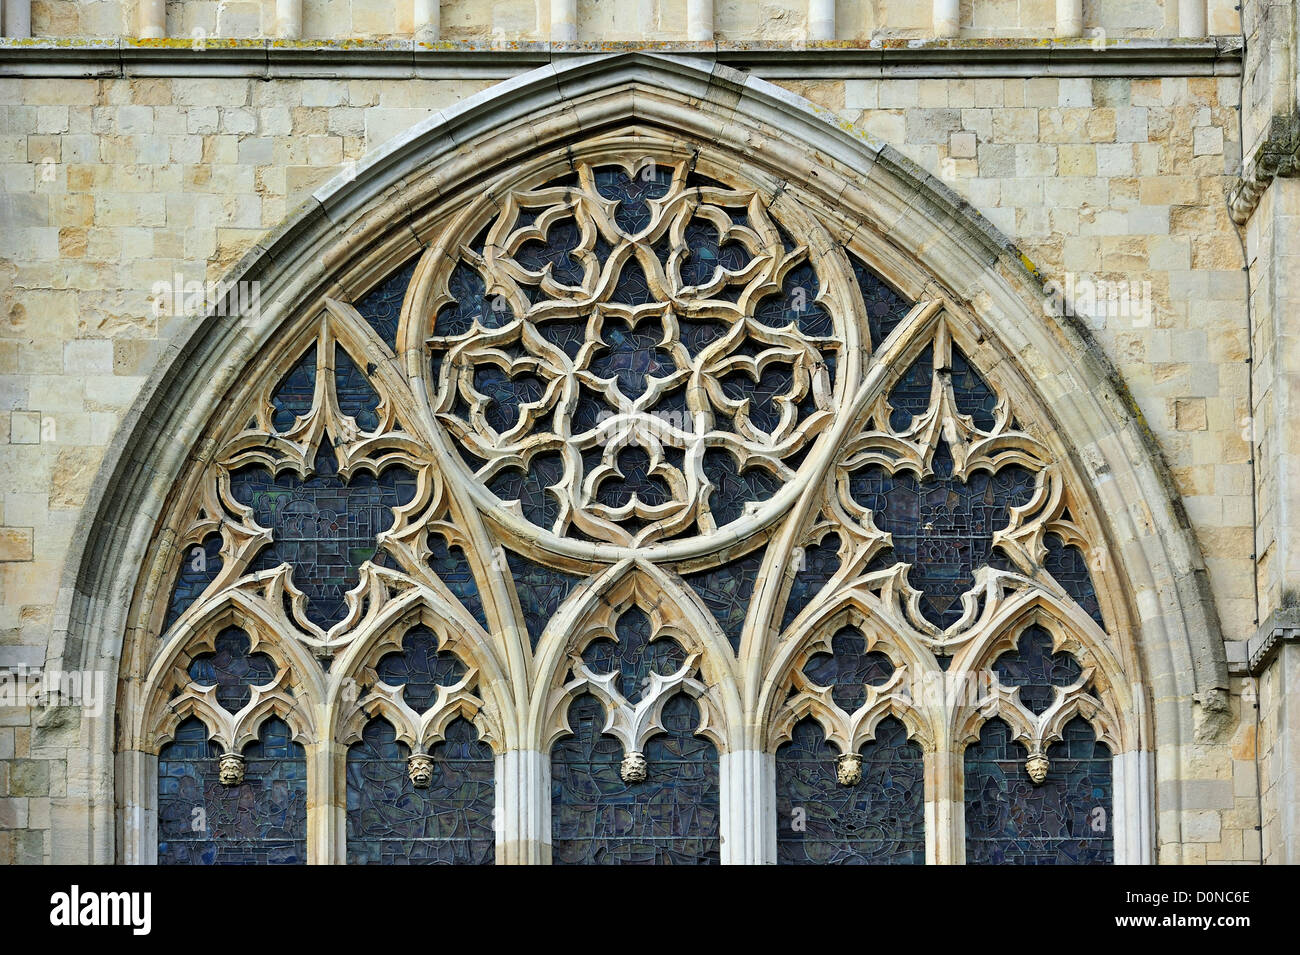 Bar-Maßwerk im gotischen Fenster der Kathedrale von Canterbury in der mittelalterlichen Stadt Canterbury, Kent, Südengland, Großbritannien Stockfoto